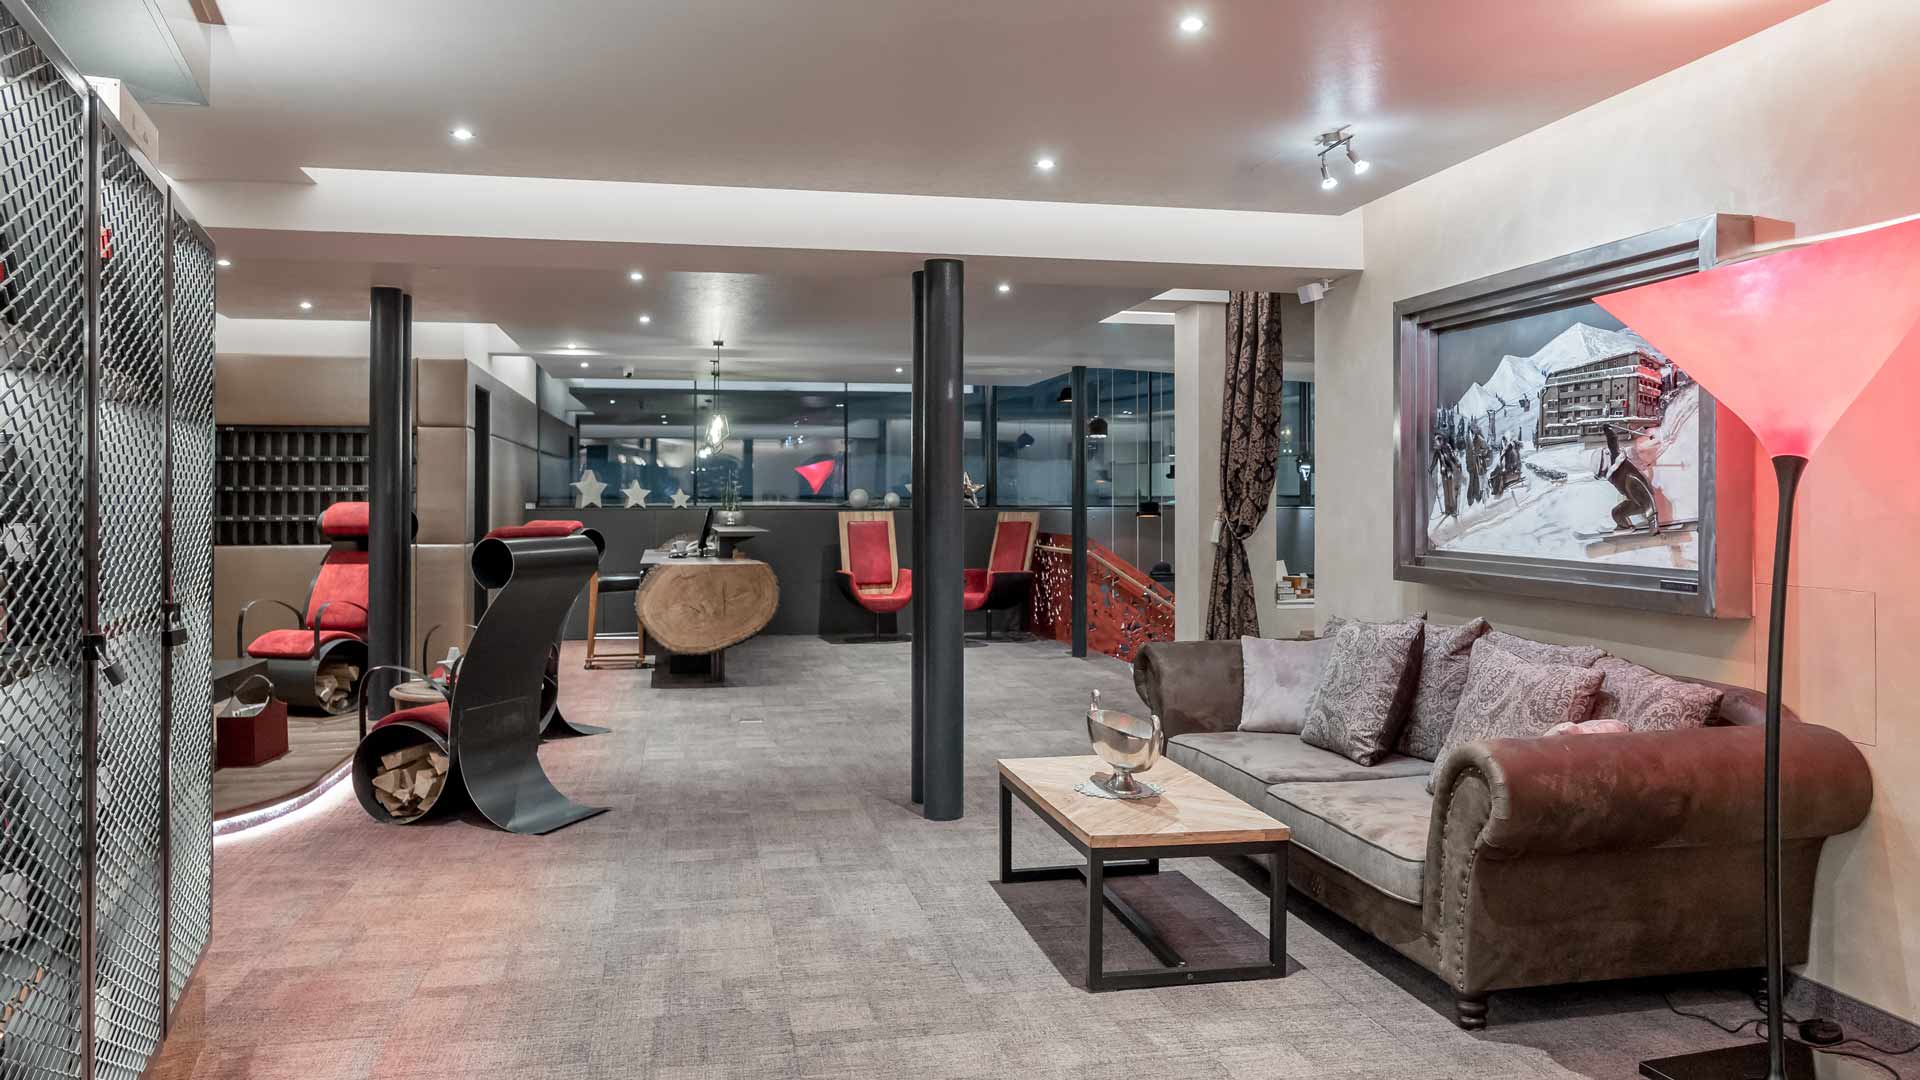 Hotelhalle im modern-innovativen Stil mit gemütlicher Sitzecke und offenem Kamin